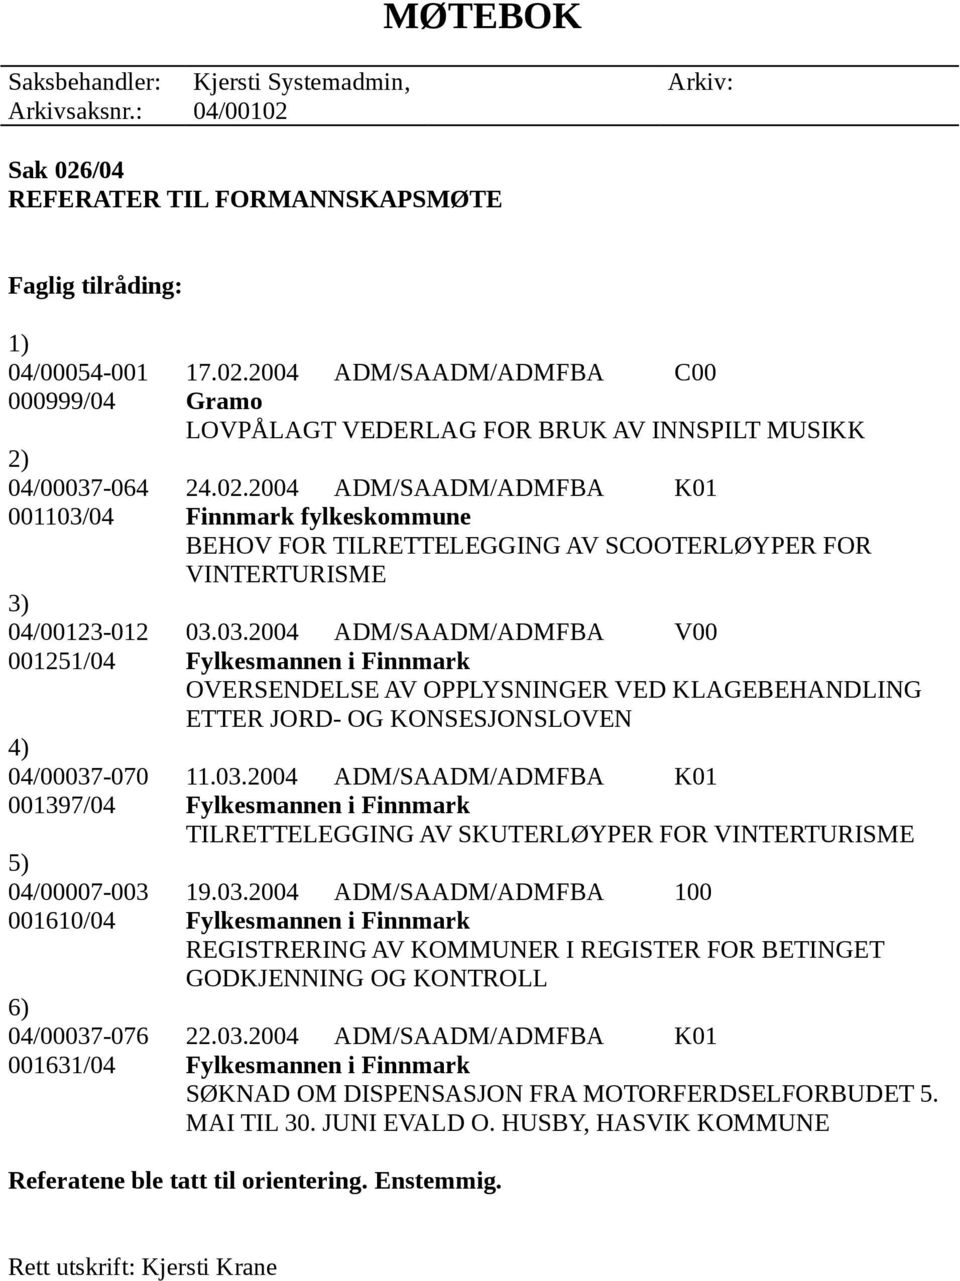 03.2004 ADM/SAADM/ADMFBA K01 001397/04 Fylkesmannen i Finnmark TILRETTELEGGING AV SKUTERLØYPER FOR VINTERTURISME 5) 04/00007-003 19.03.2004 ADM/SAADM/ADMFBA 100 001610/04 Fylkesmannen i Finnmark REGISTRERING AV KOMMUNER I REGISTER FOR BETINGET GODKJENNING OG KONTROLL 6) 04/00037-076 22.